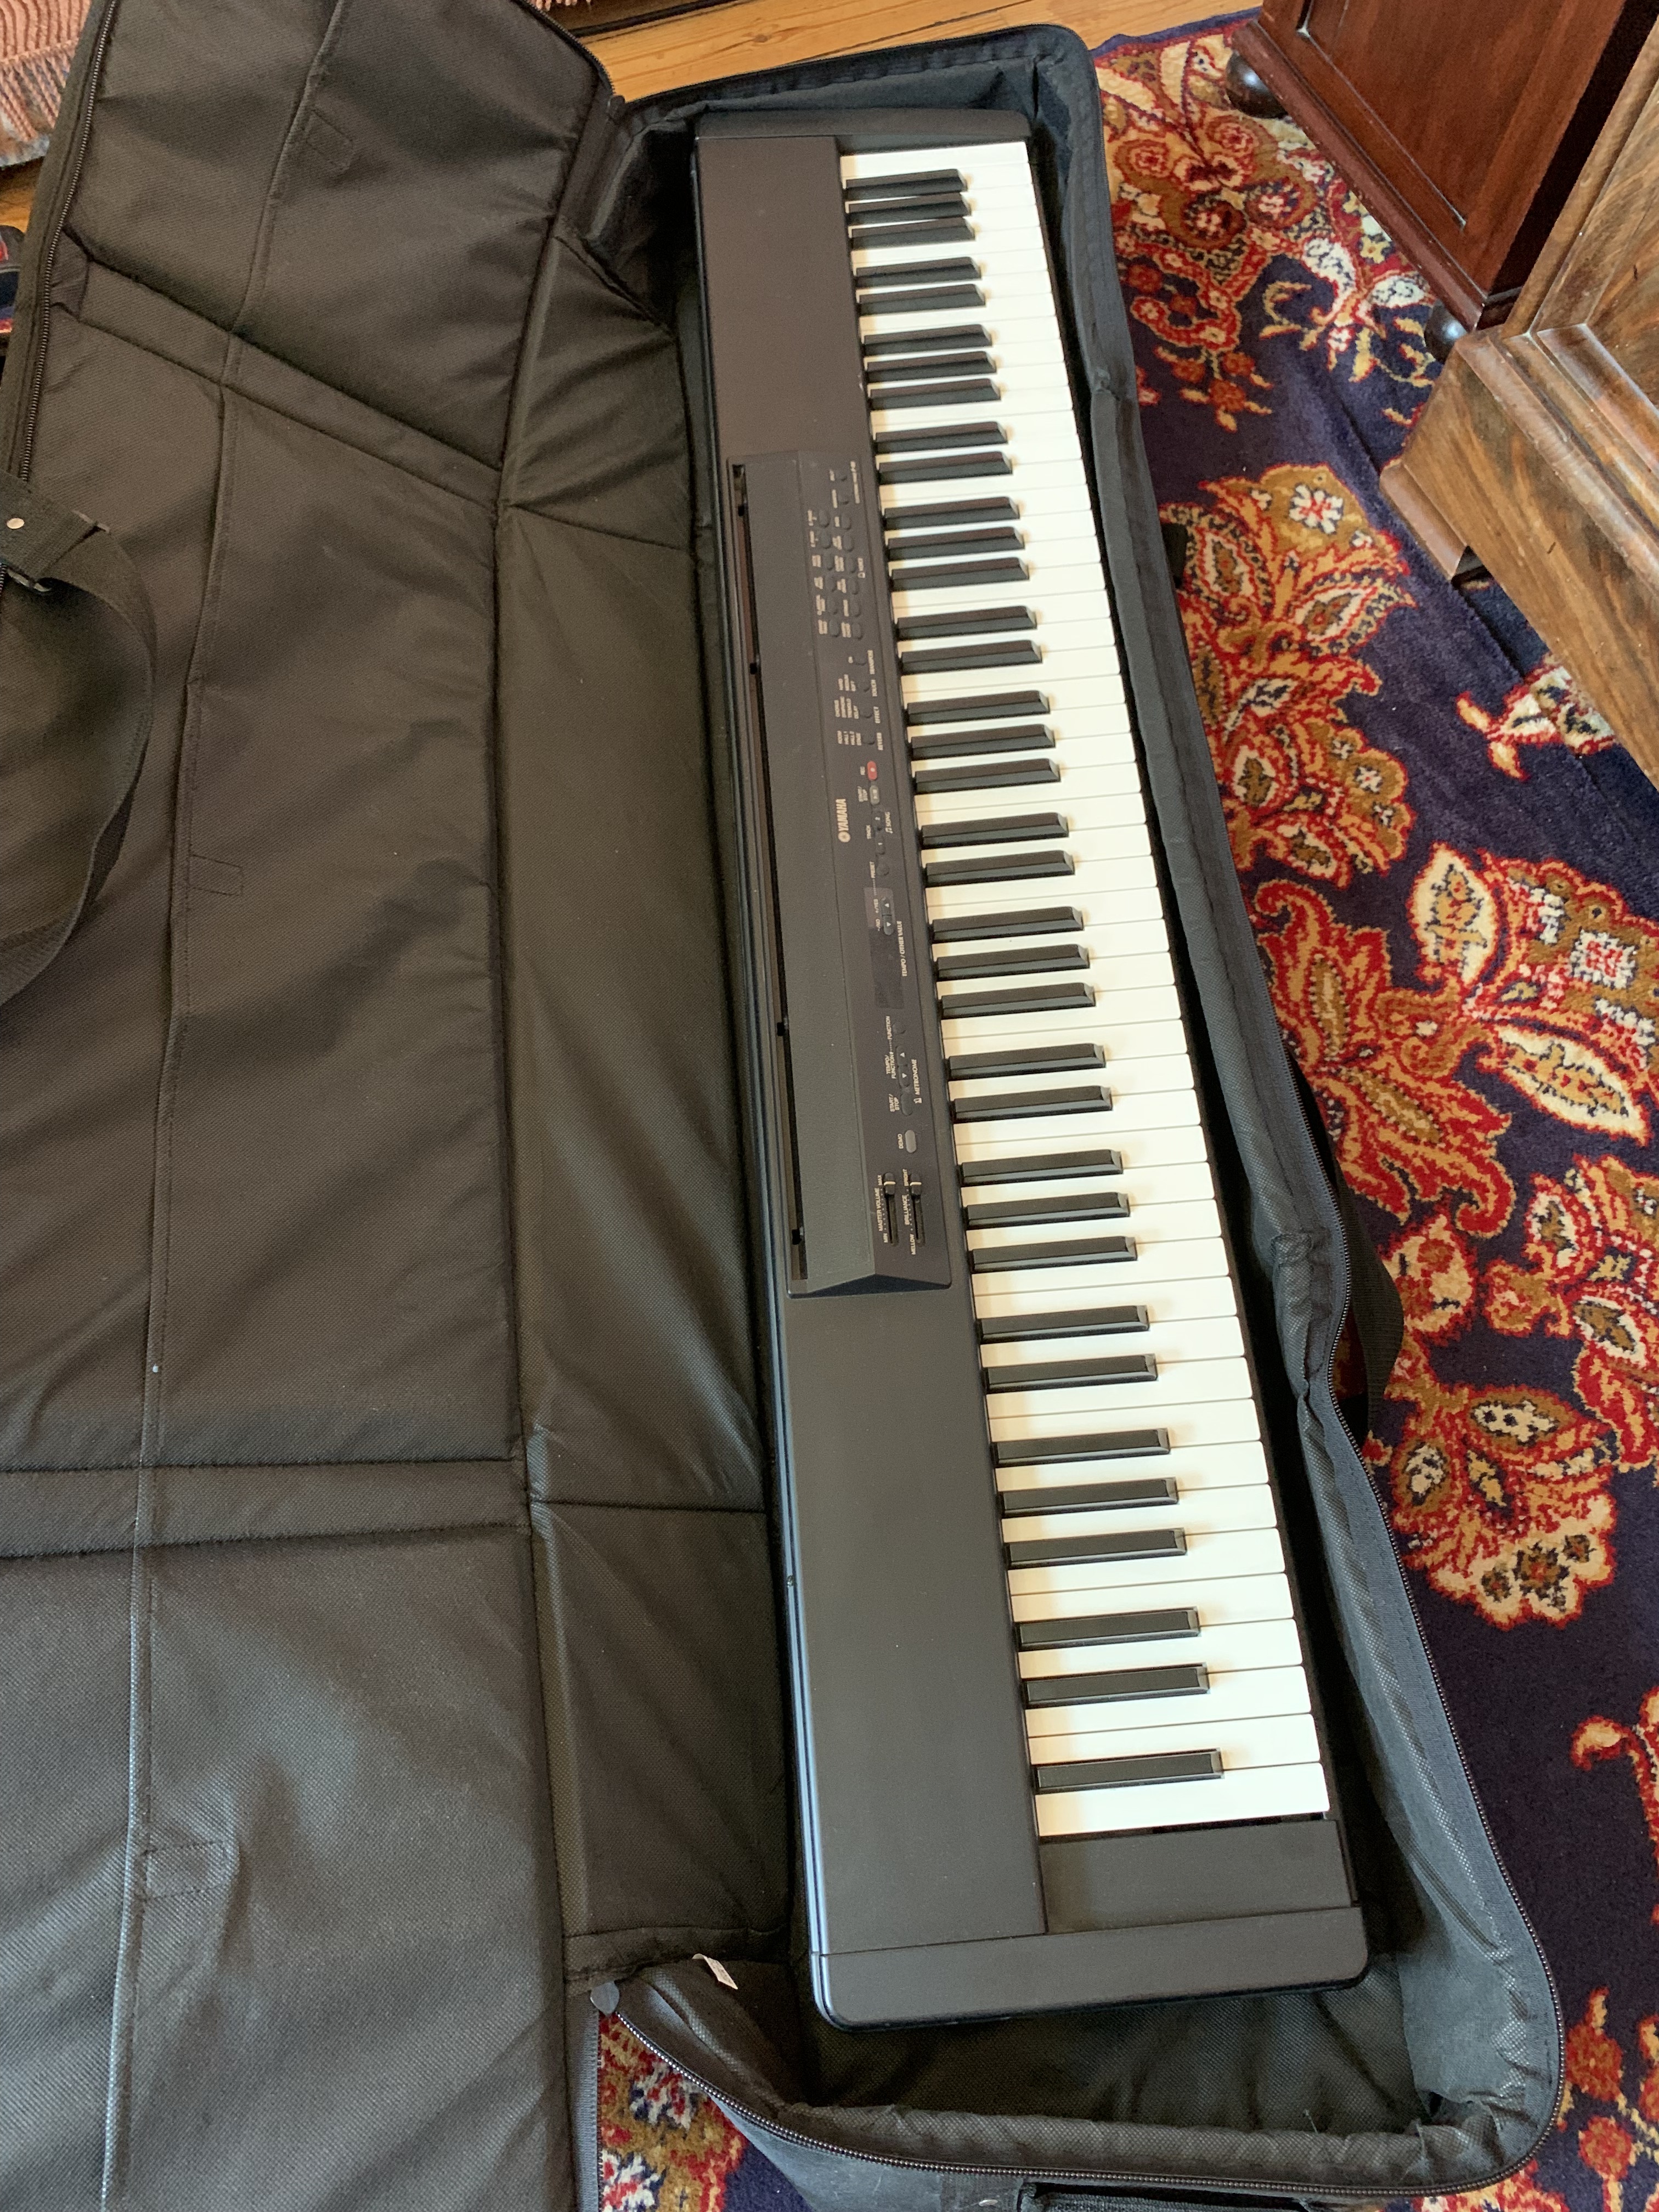 piano numérique de scène P80 Yamaha - 88 touches - toucher piano acoustique